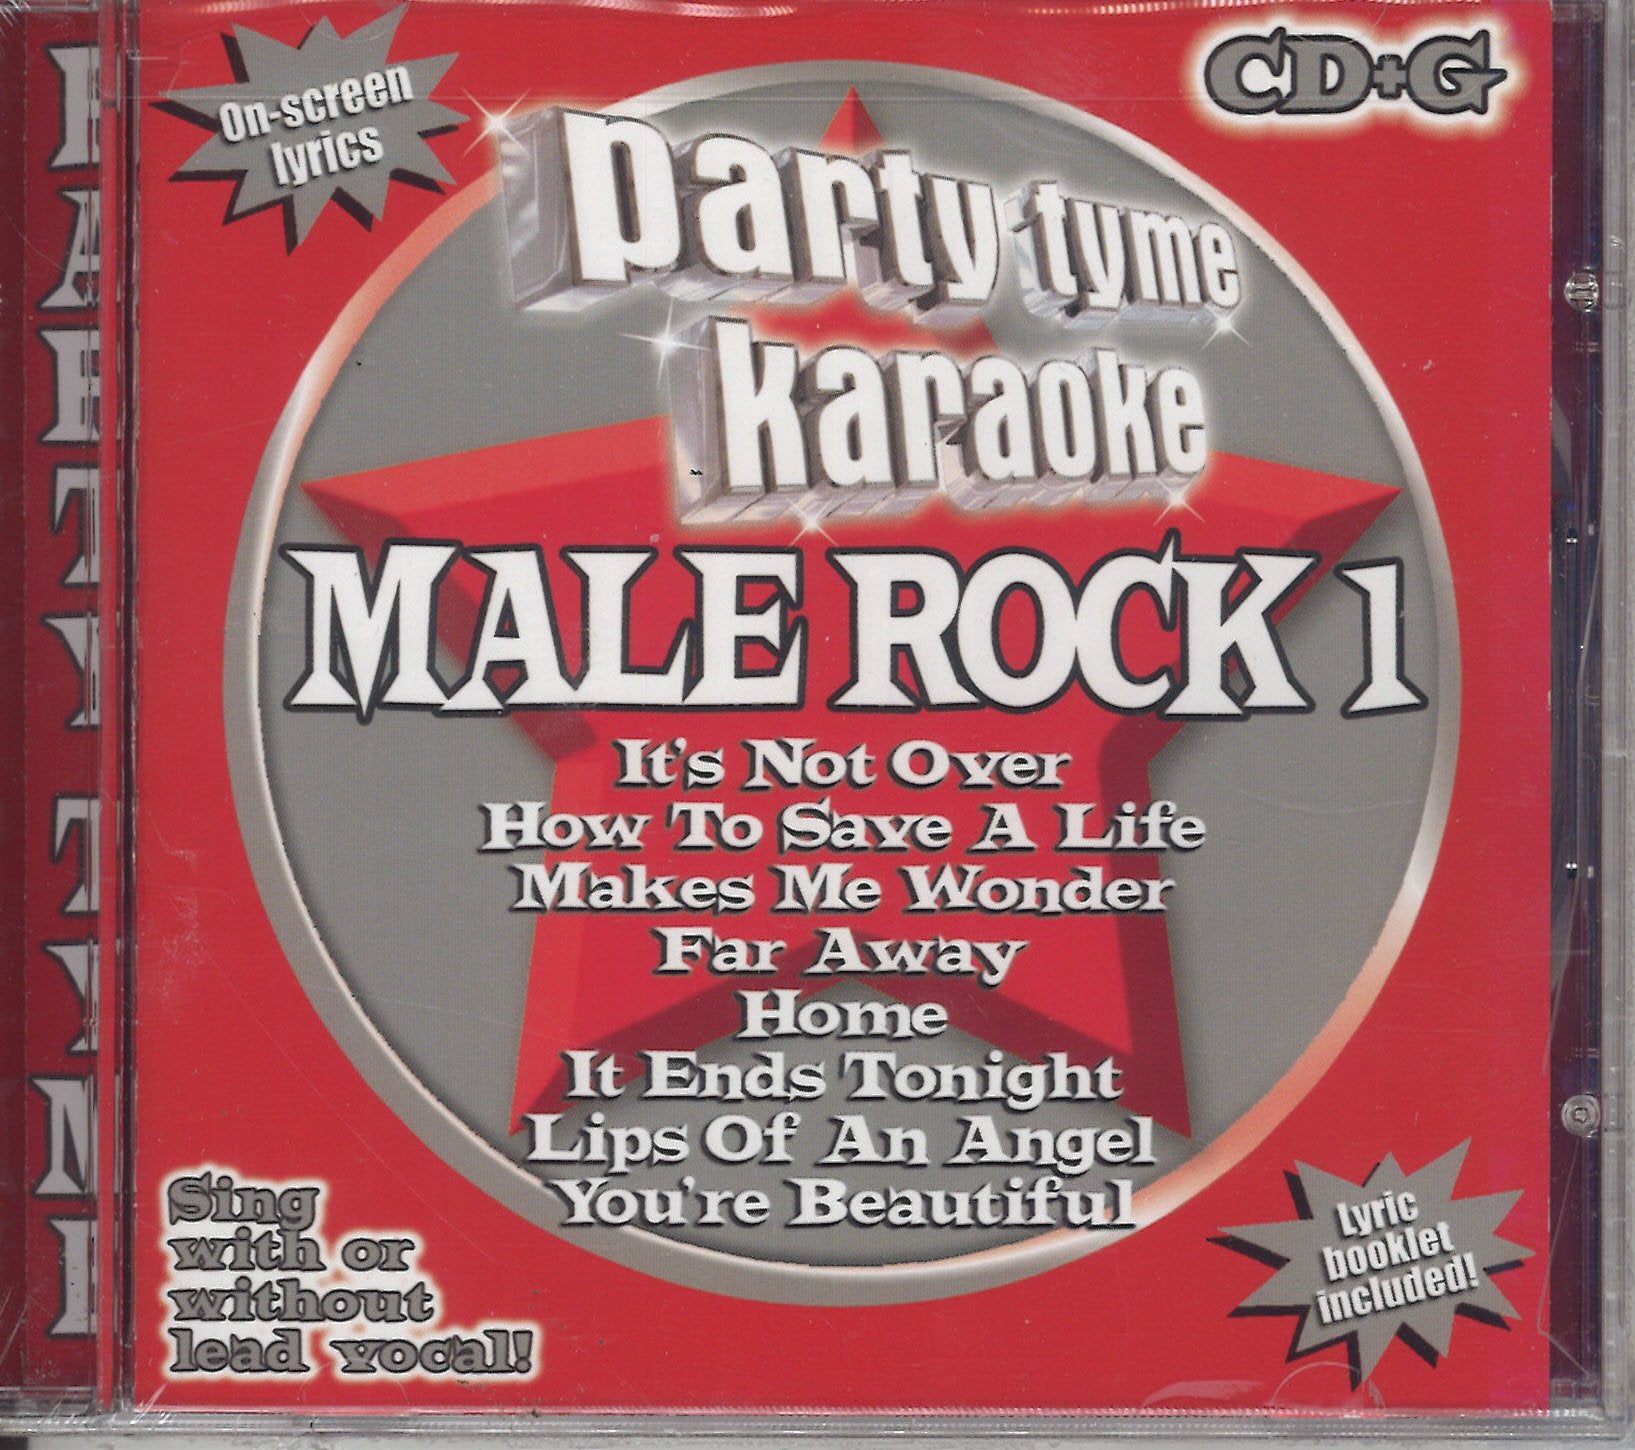 Party Tyme Karaoke Male Rock 1